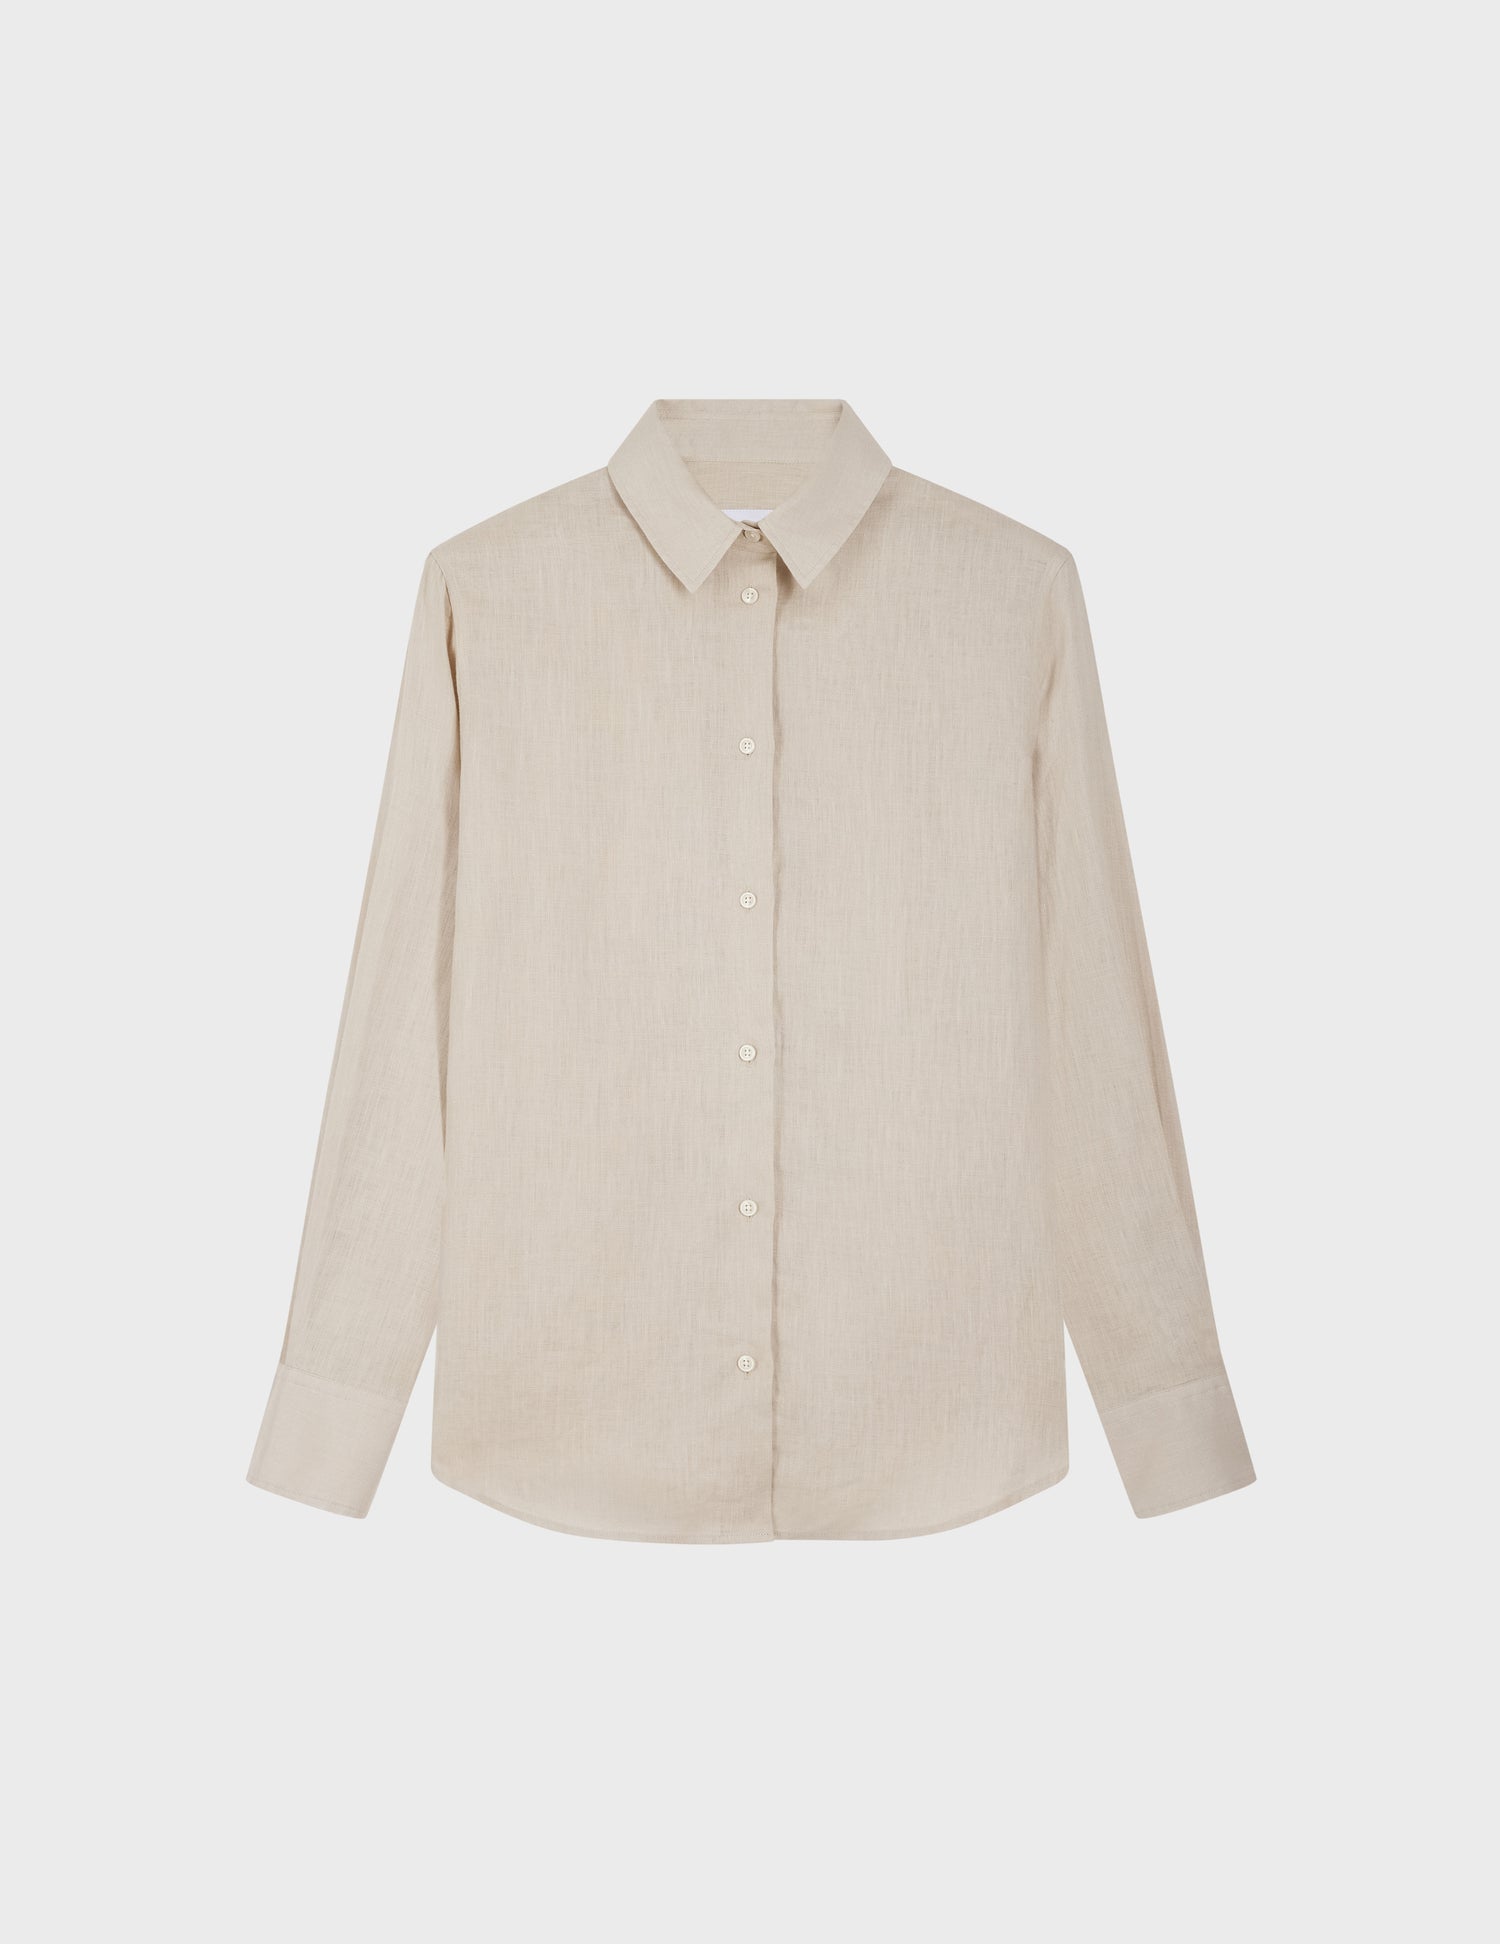 Marion shirt in beige linen - Linen - Shirt Collar#4